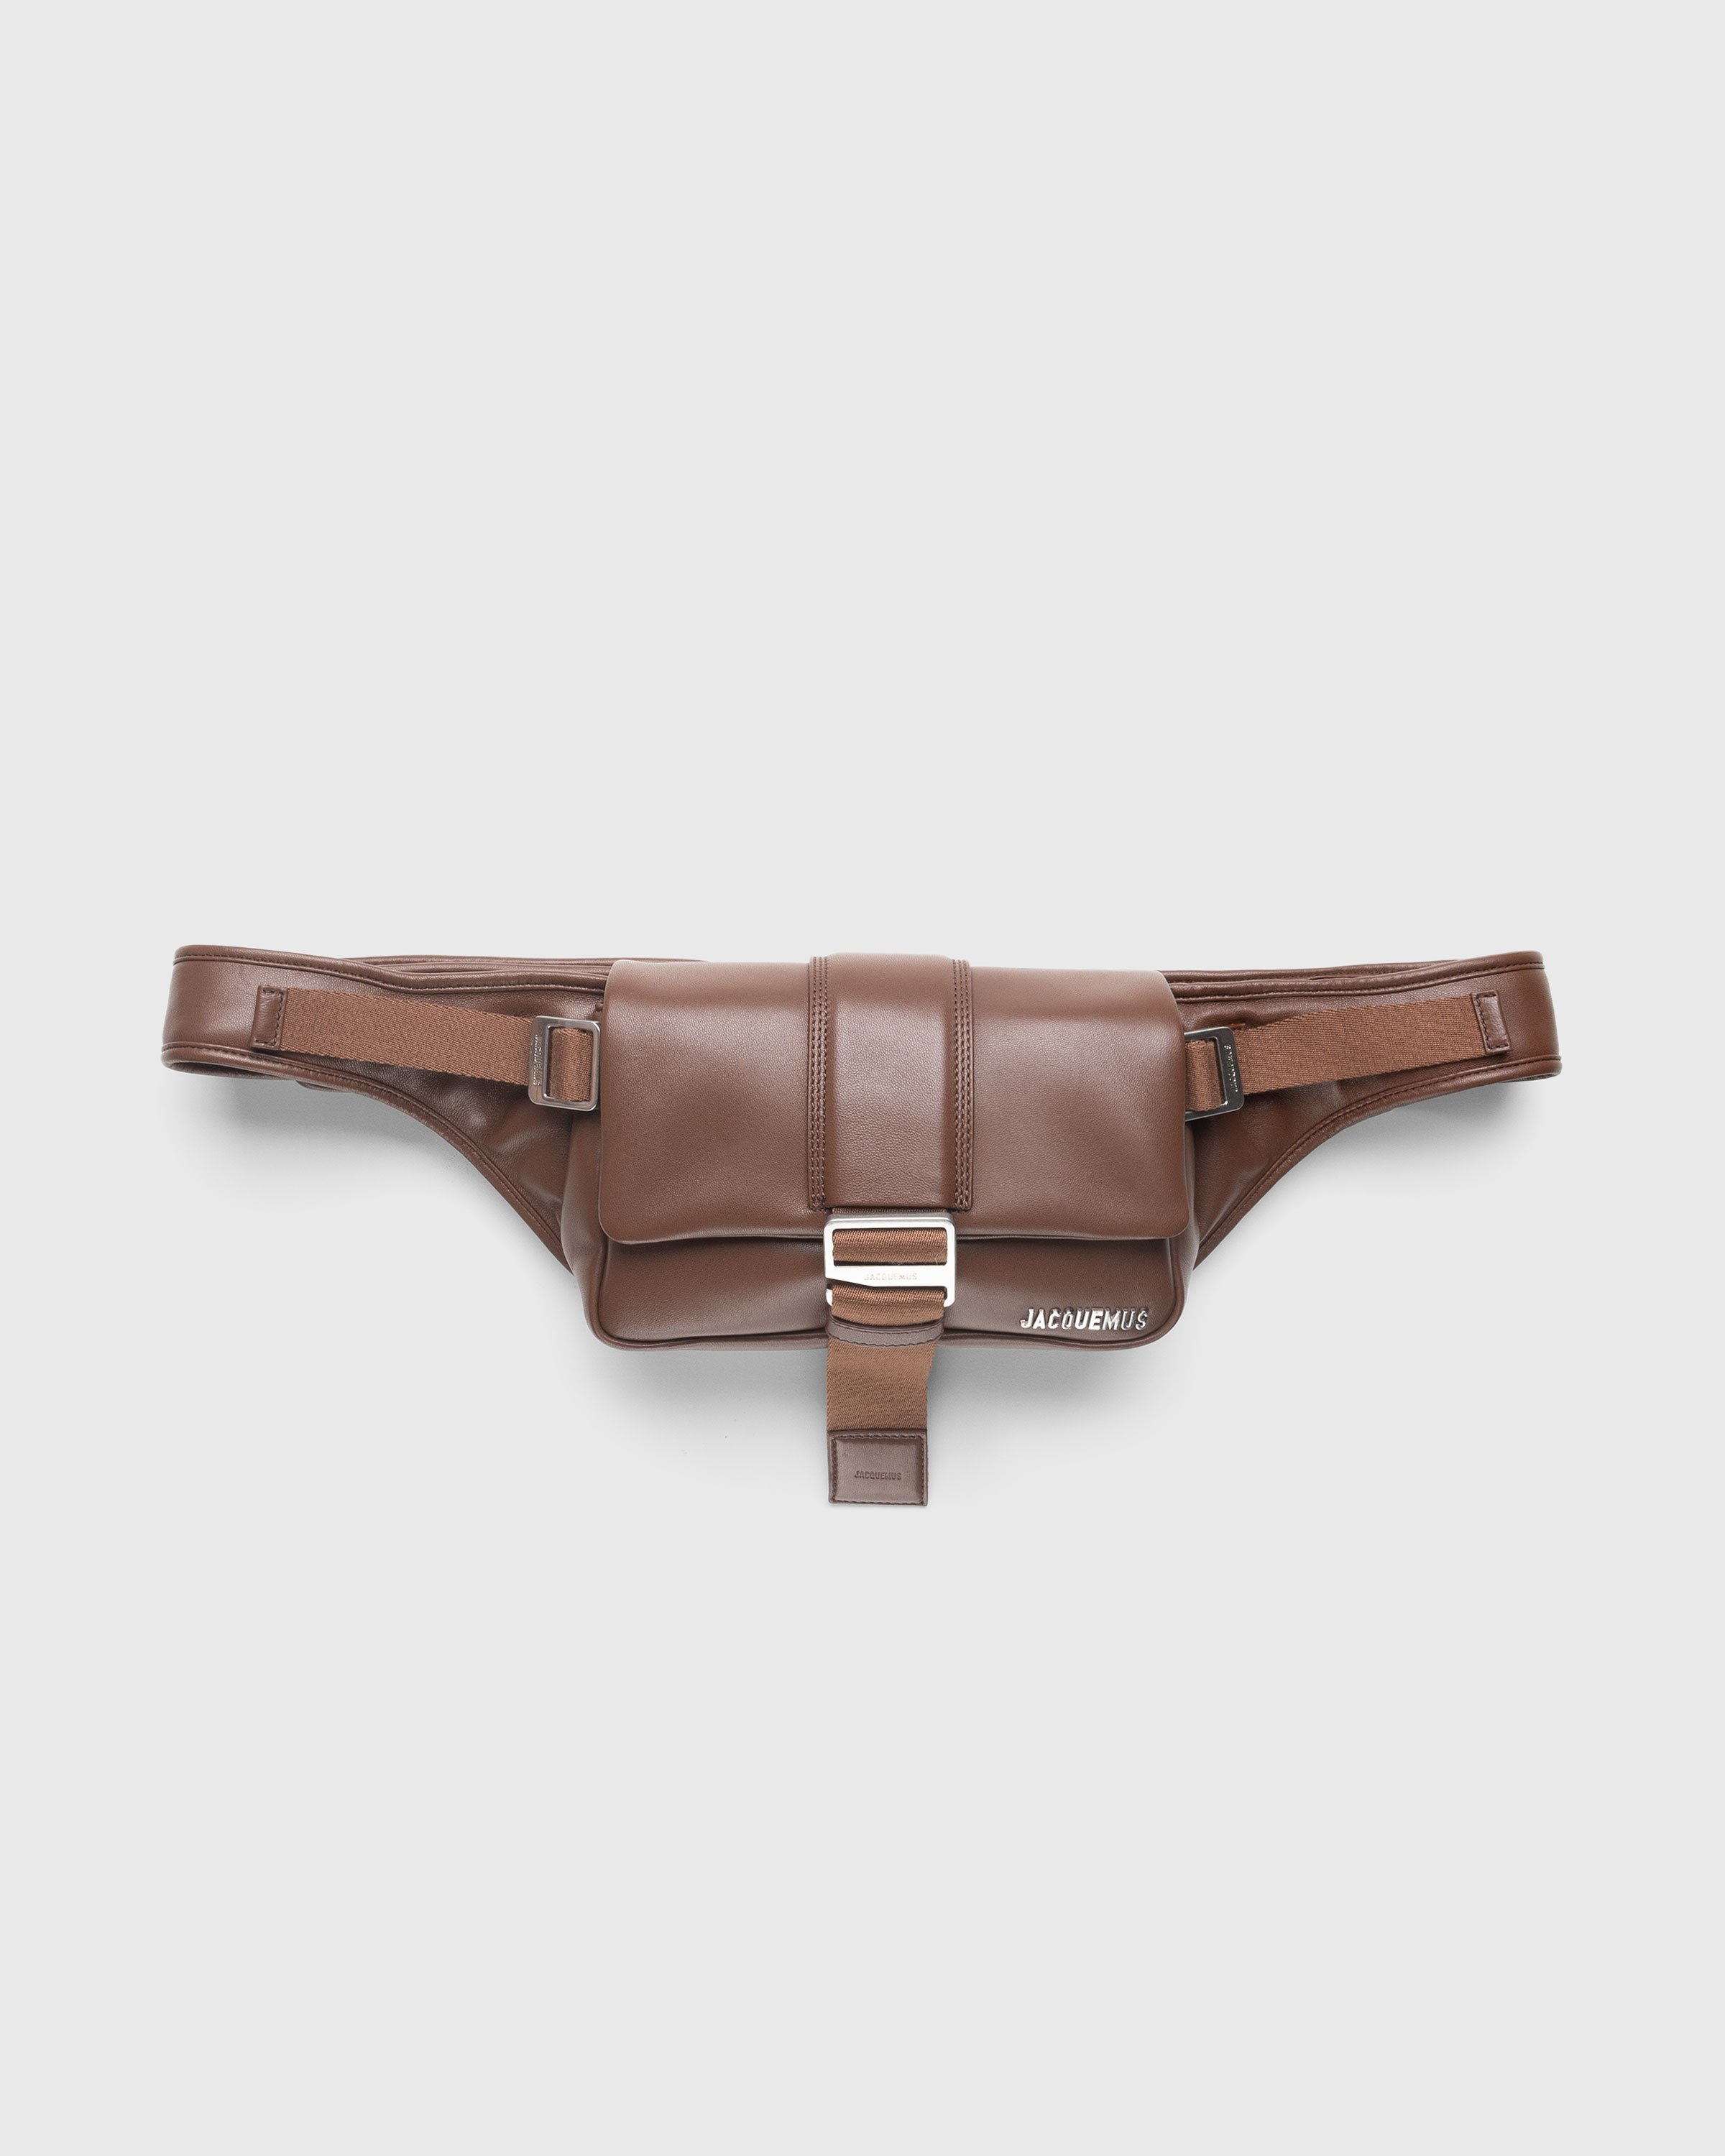 Jacquemus La Banane Leather And Canvas Belt Bag (Belt Bags)